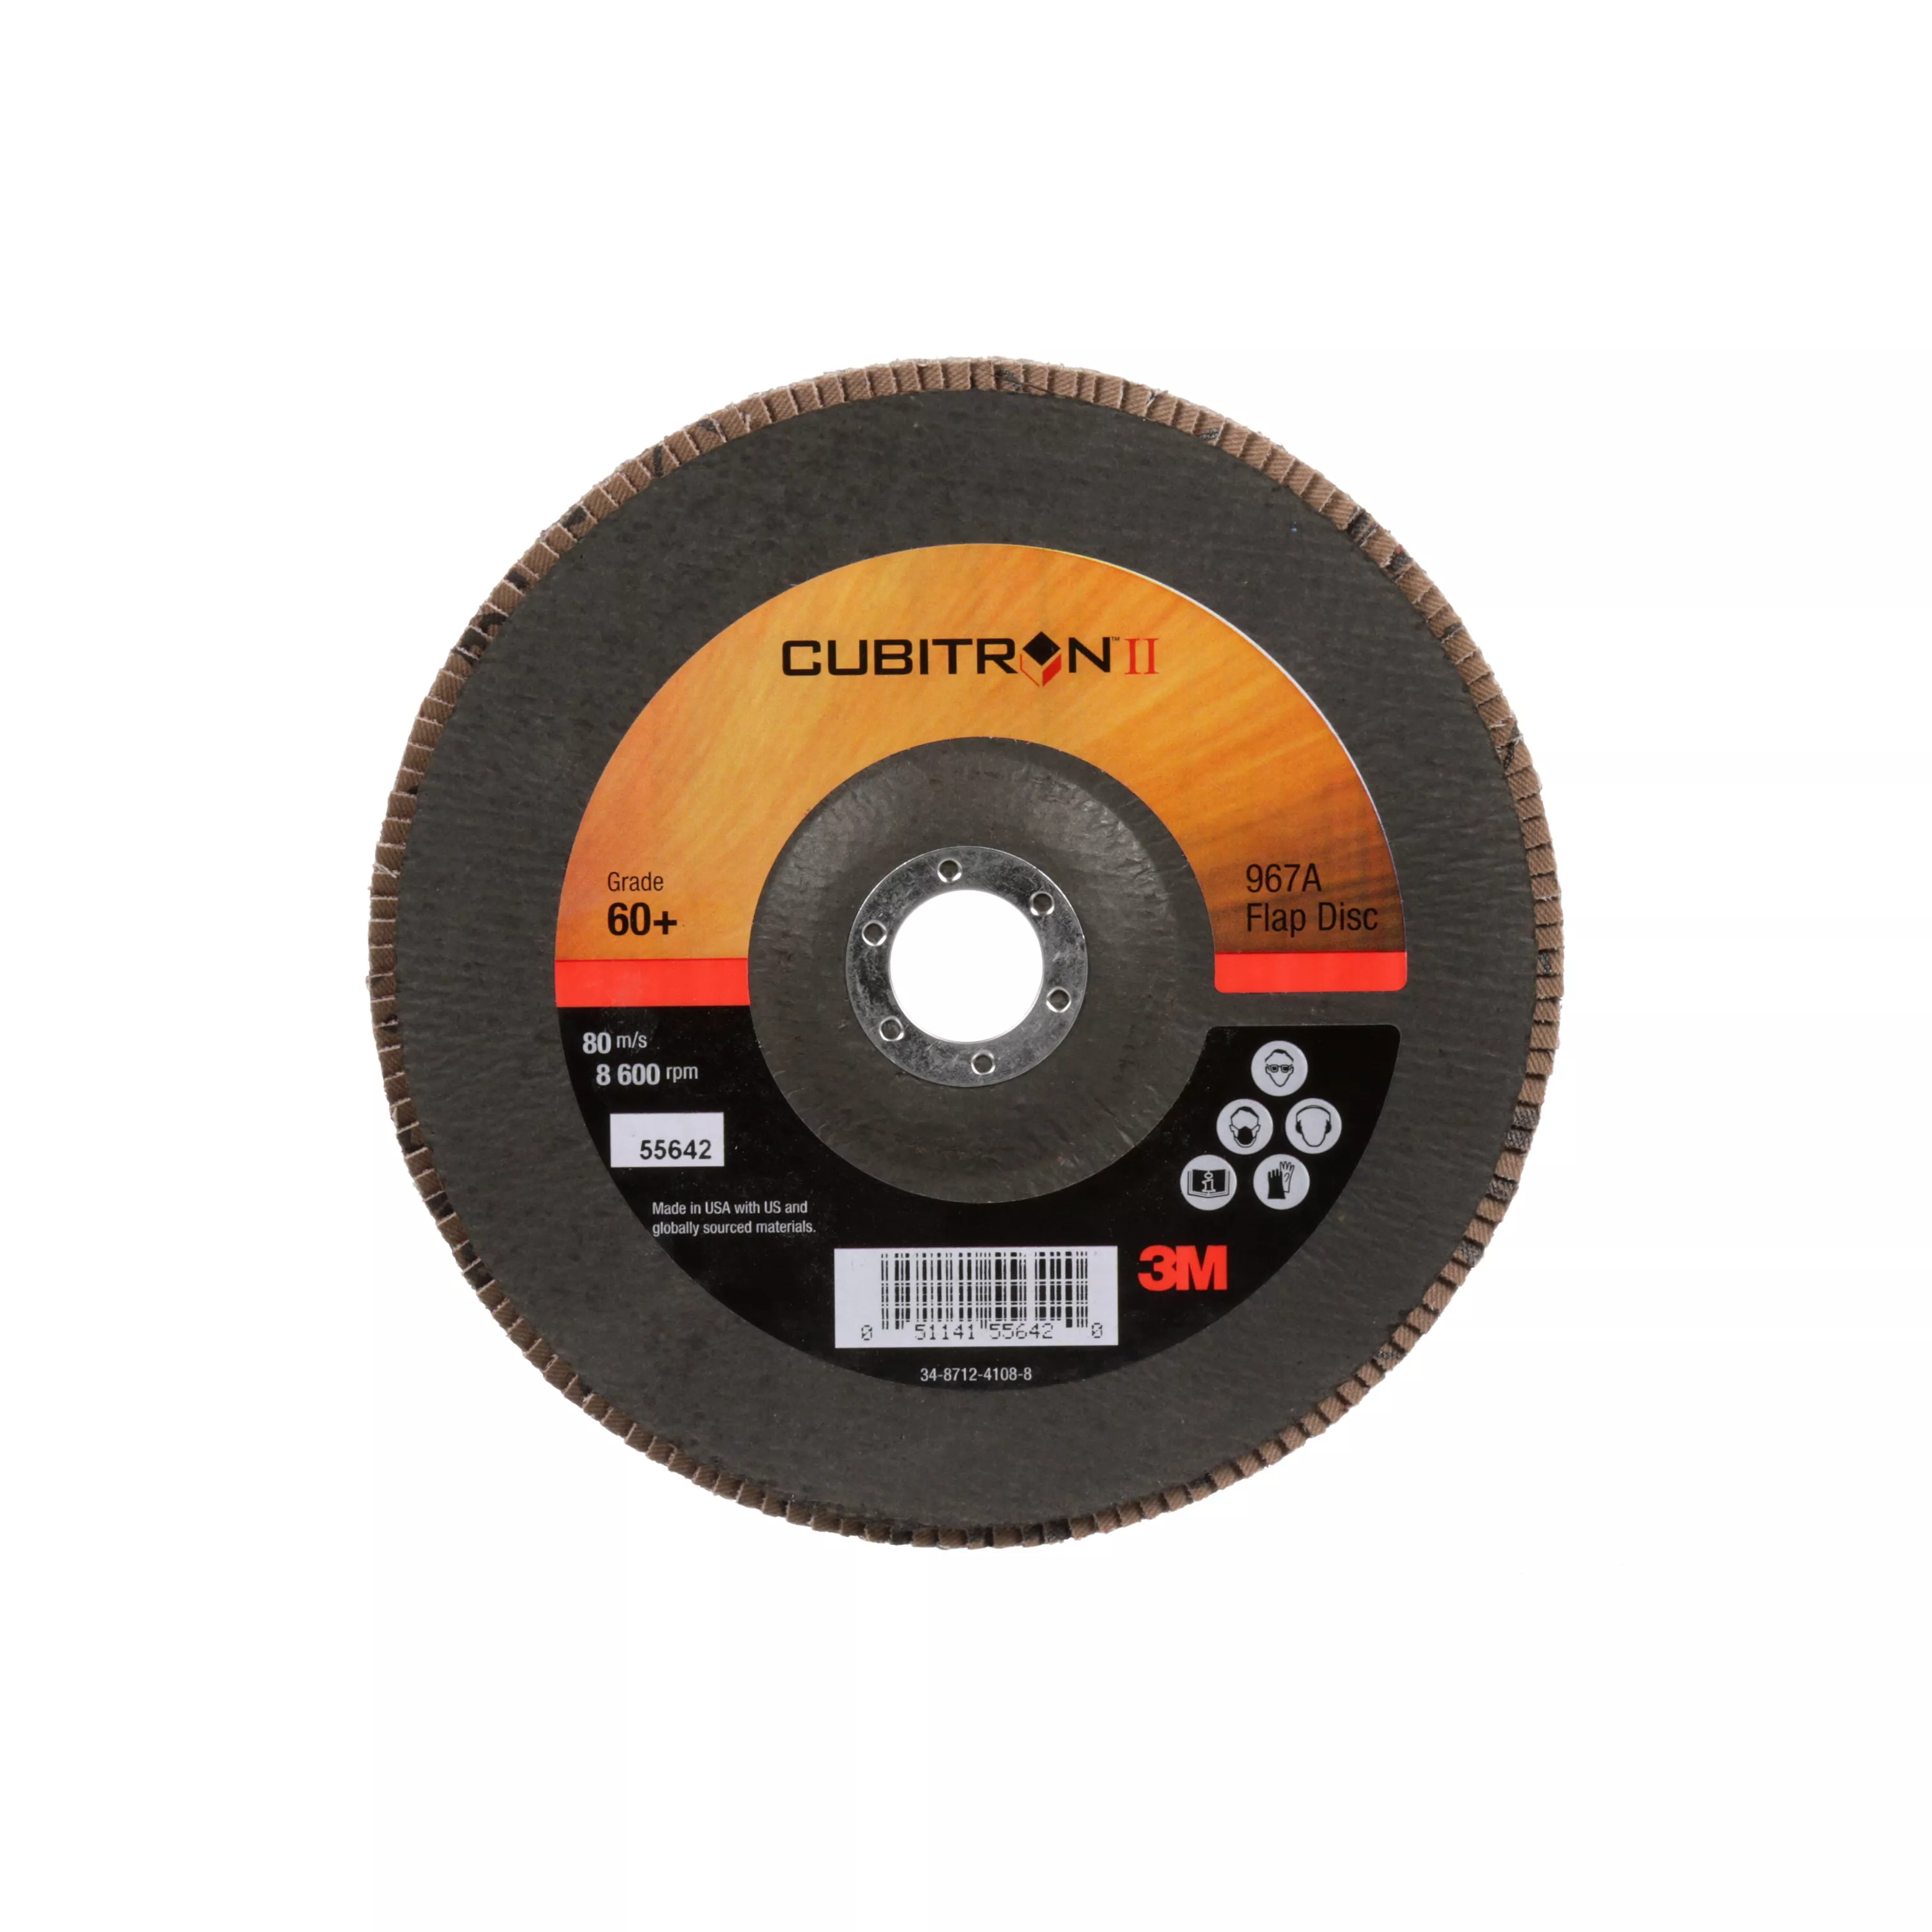 3M™ Cubitron™ II Flap Disc 967A, 60+, T27, 7 in x 7/8 in, Giant, 5
ea/Case